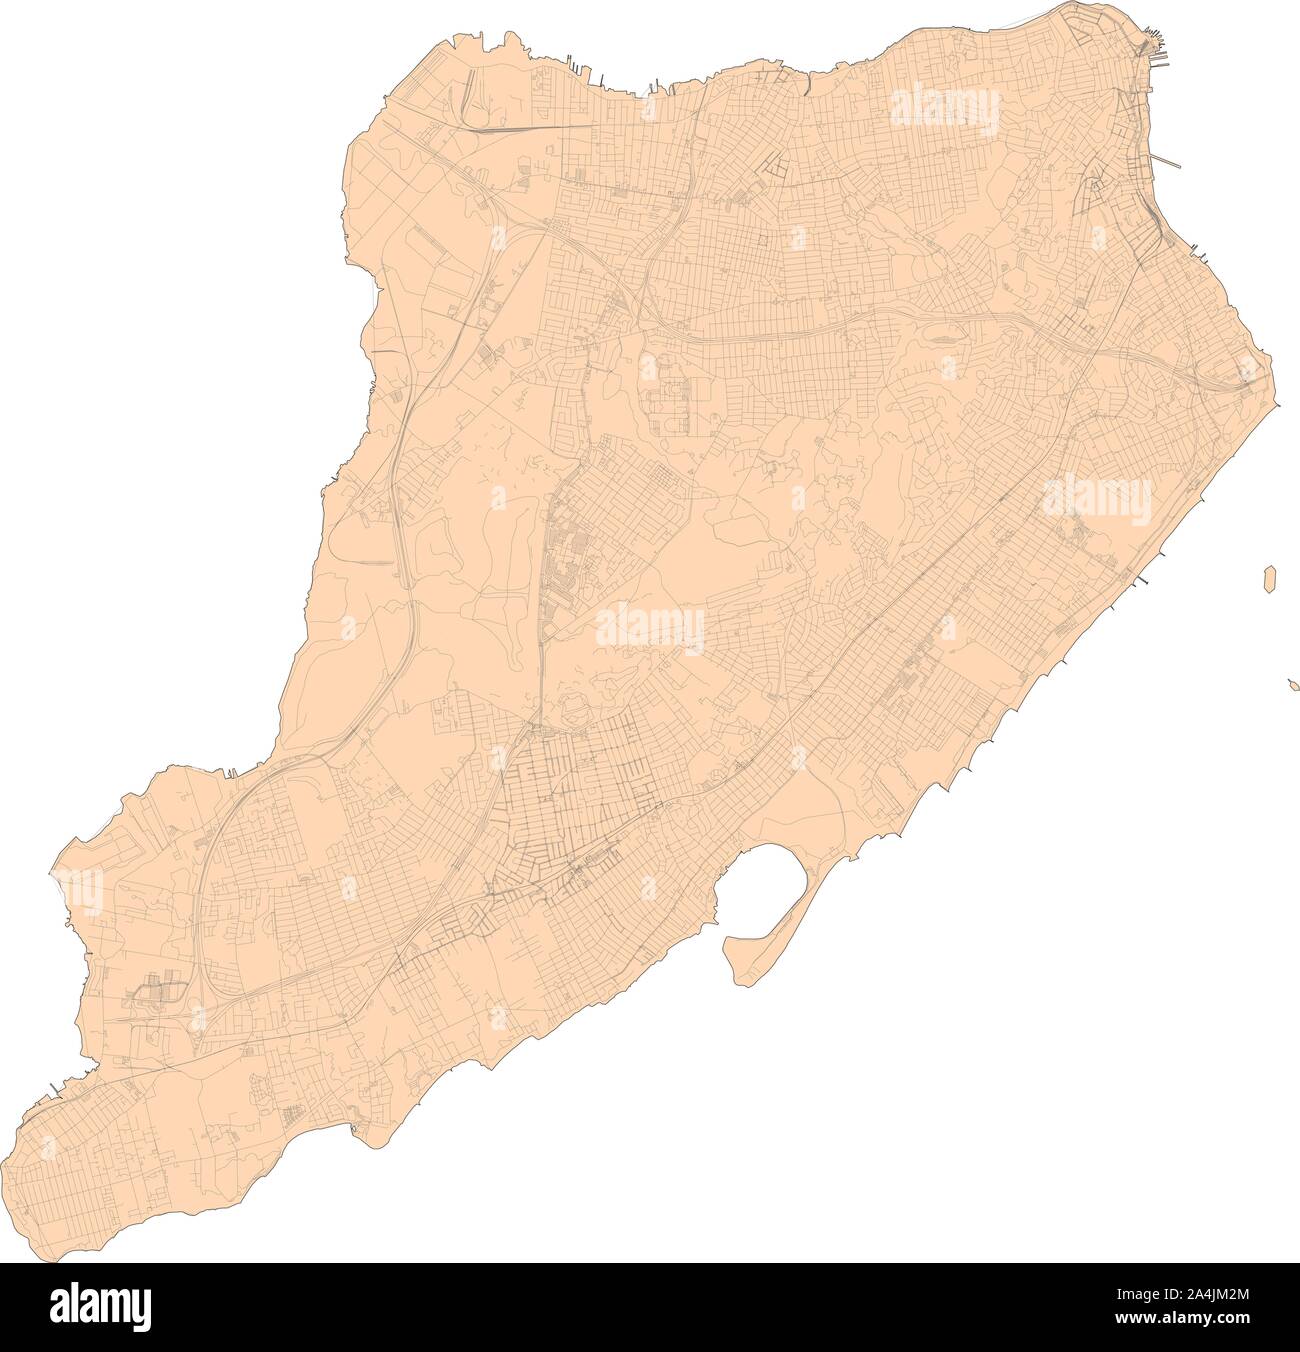 Mappa satellitare di New York City, Staten Island, Stati Uniti d'America. Mappa di strade, tangenziali e autostrade, fiumi, linee ferroviarie. Mappa di trasporto Illustrazione Vettoriale